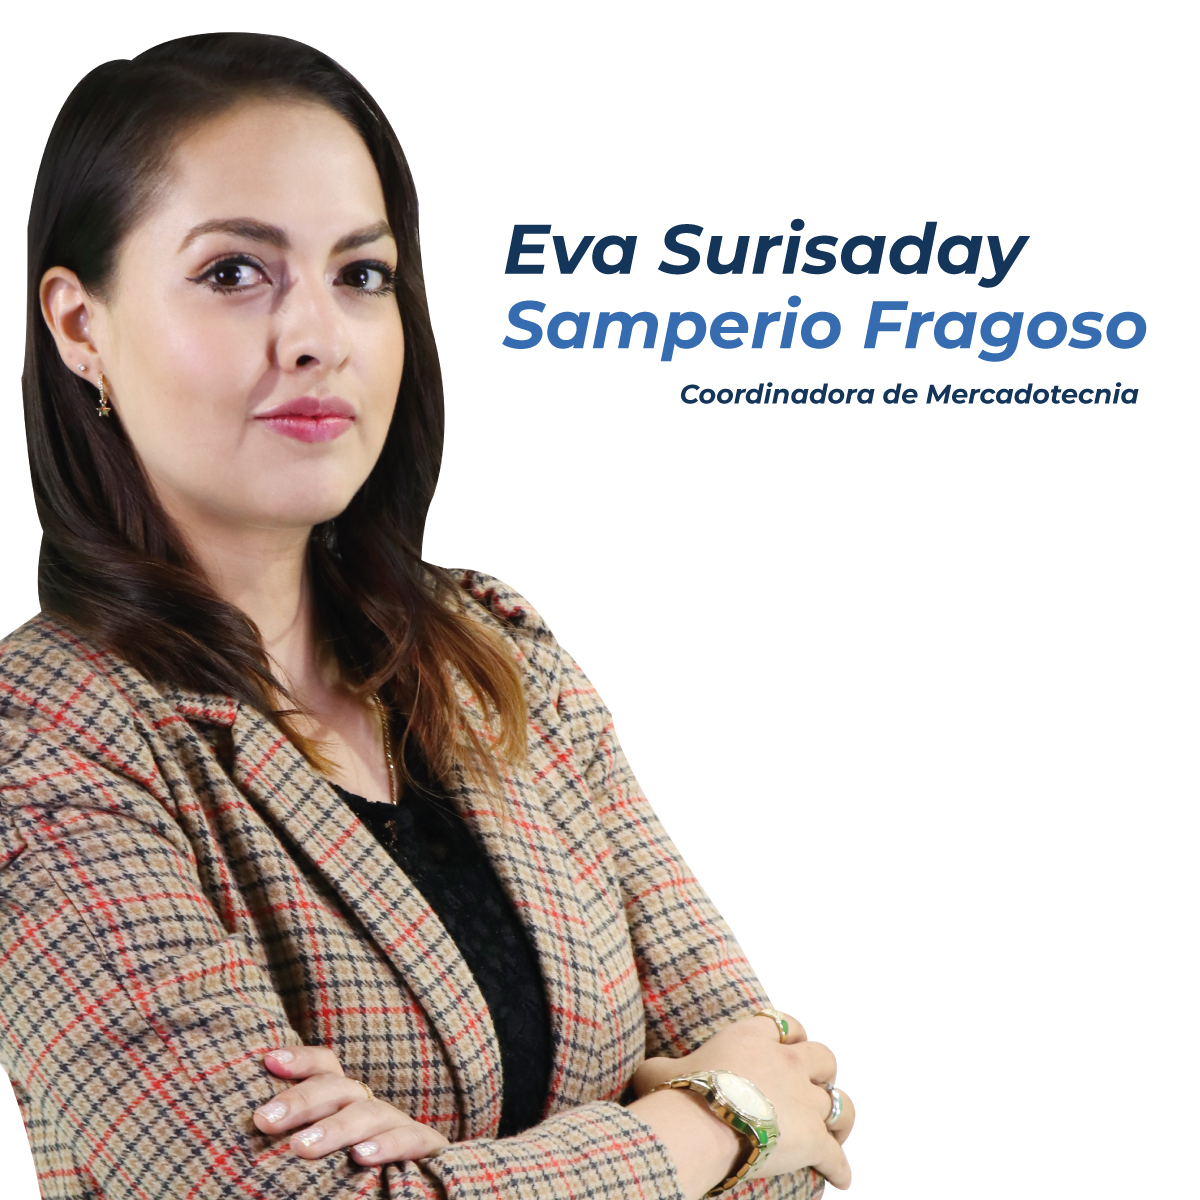 Eva Surisaday Samperio Fragoso